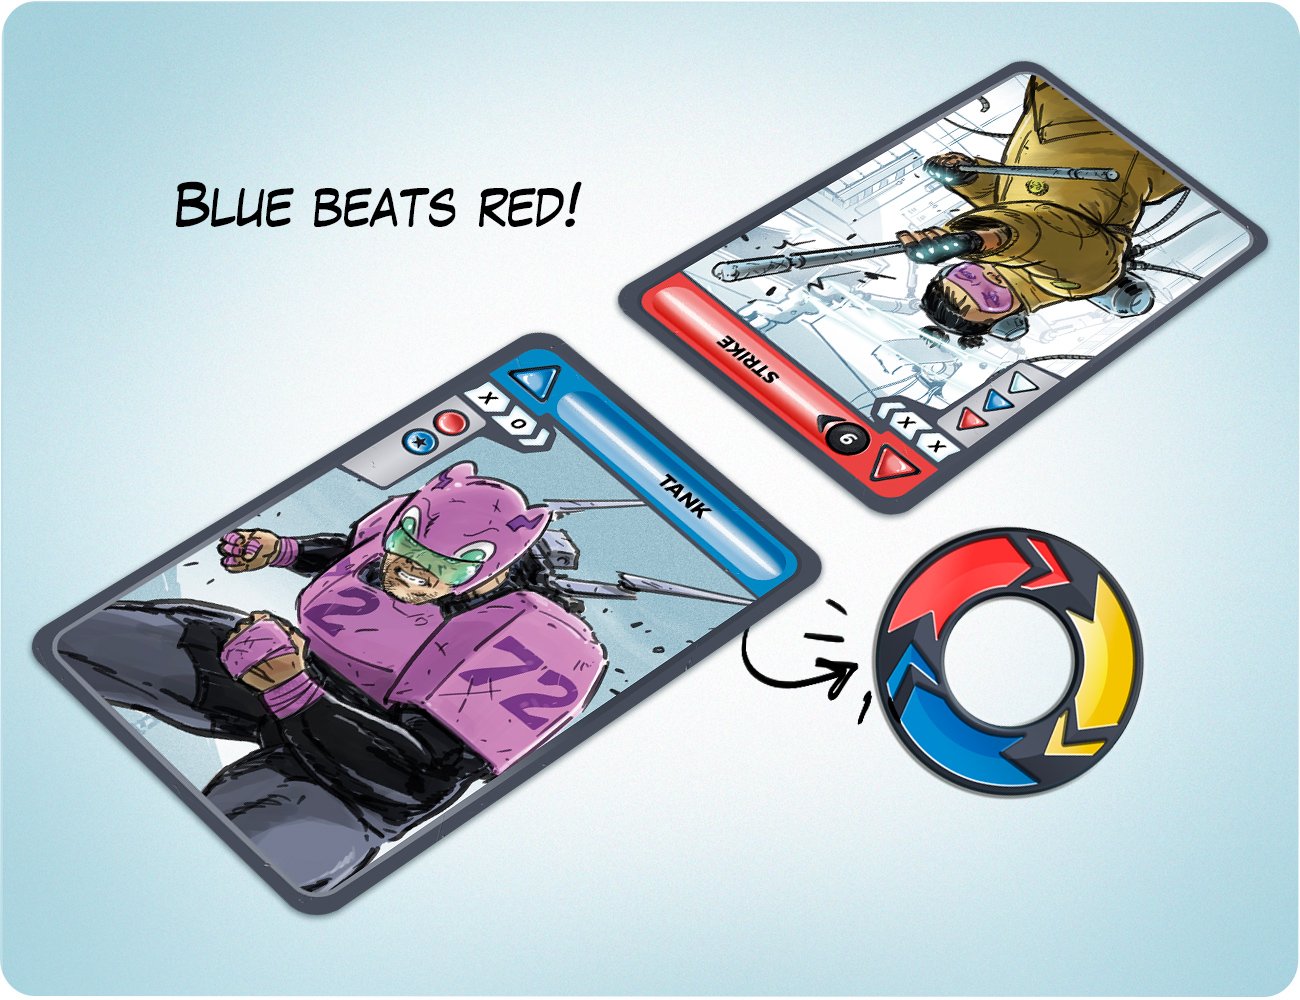 19_Blue-beats-red.jpg